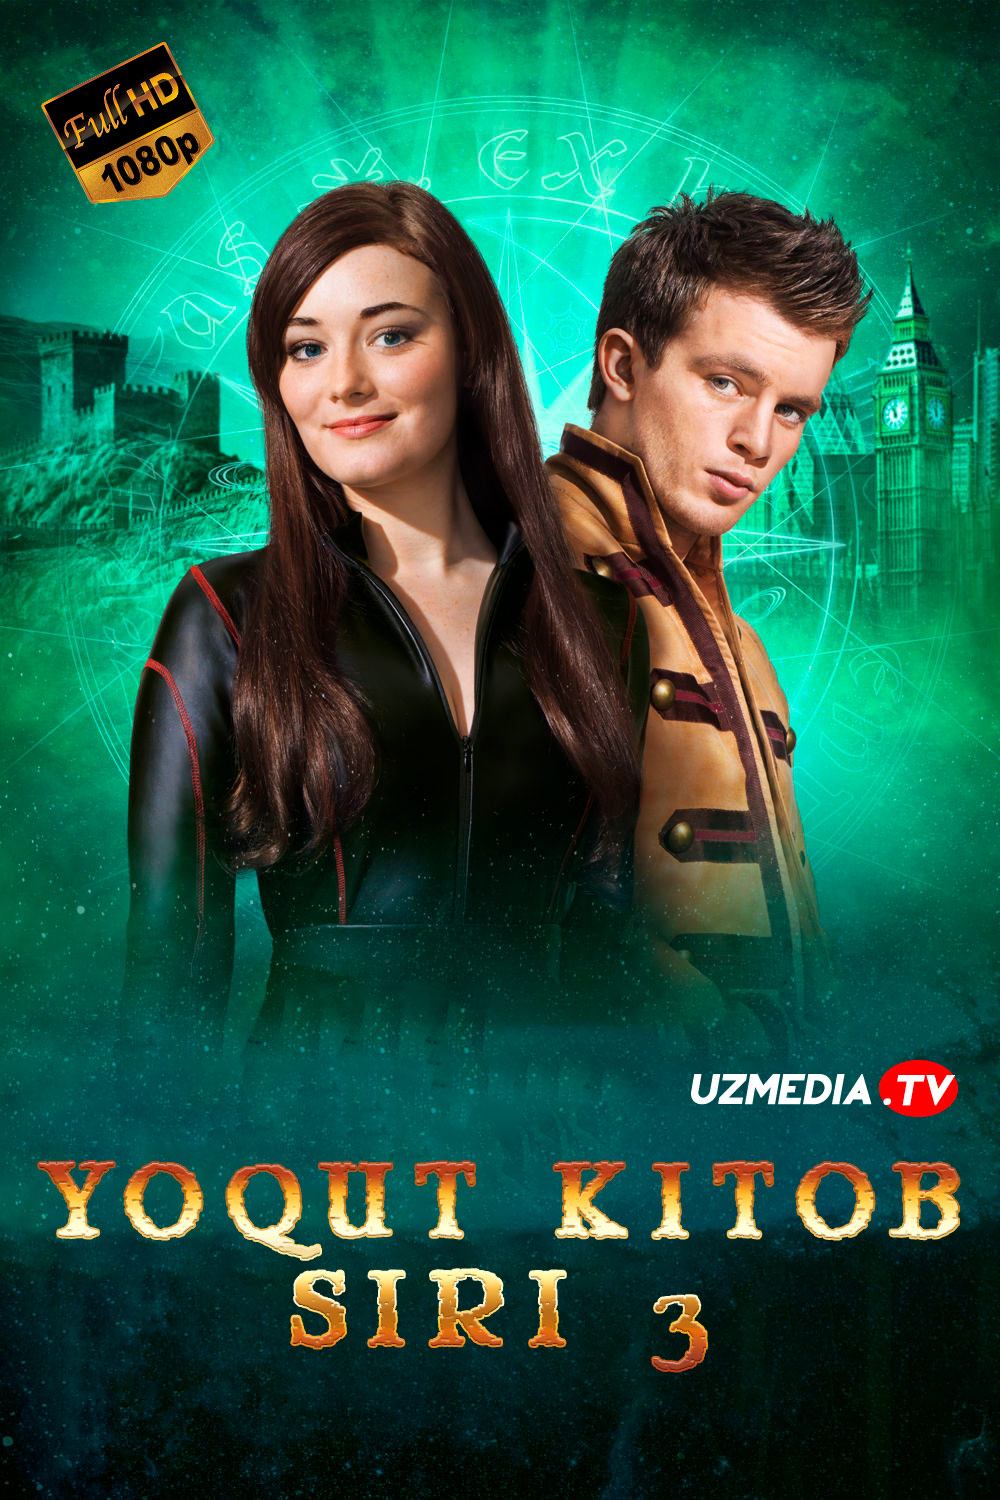 Yoqut kitob siri 3 Germaniya filmi Uzbek tilida O'zbekcha 2016 tarjima kino Full HD skachat